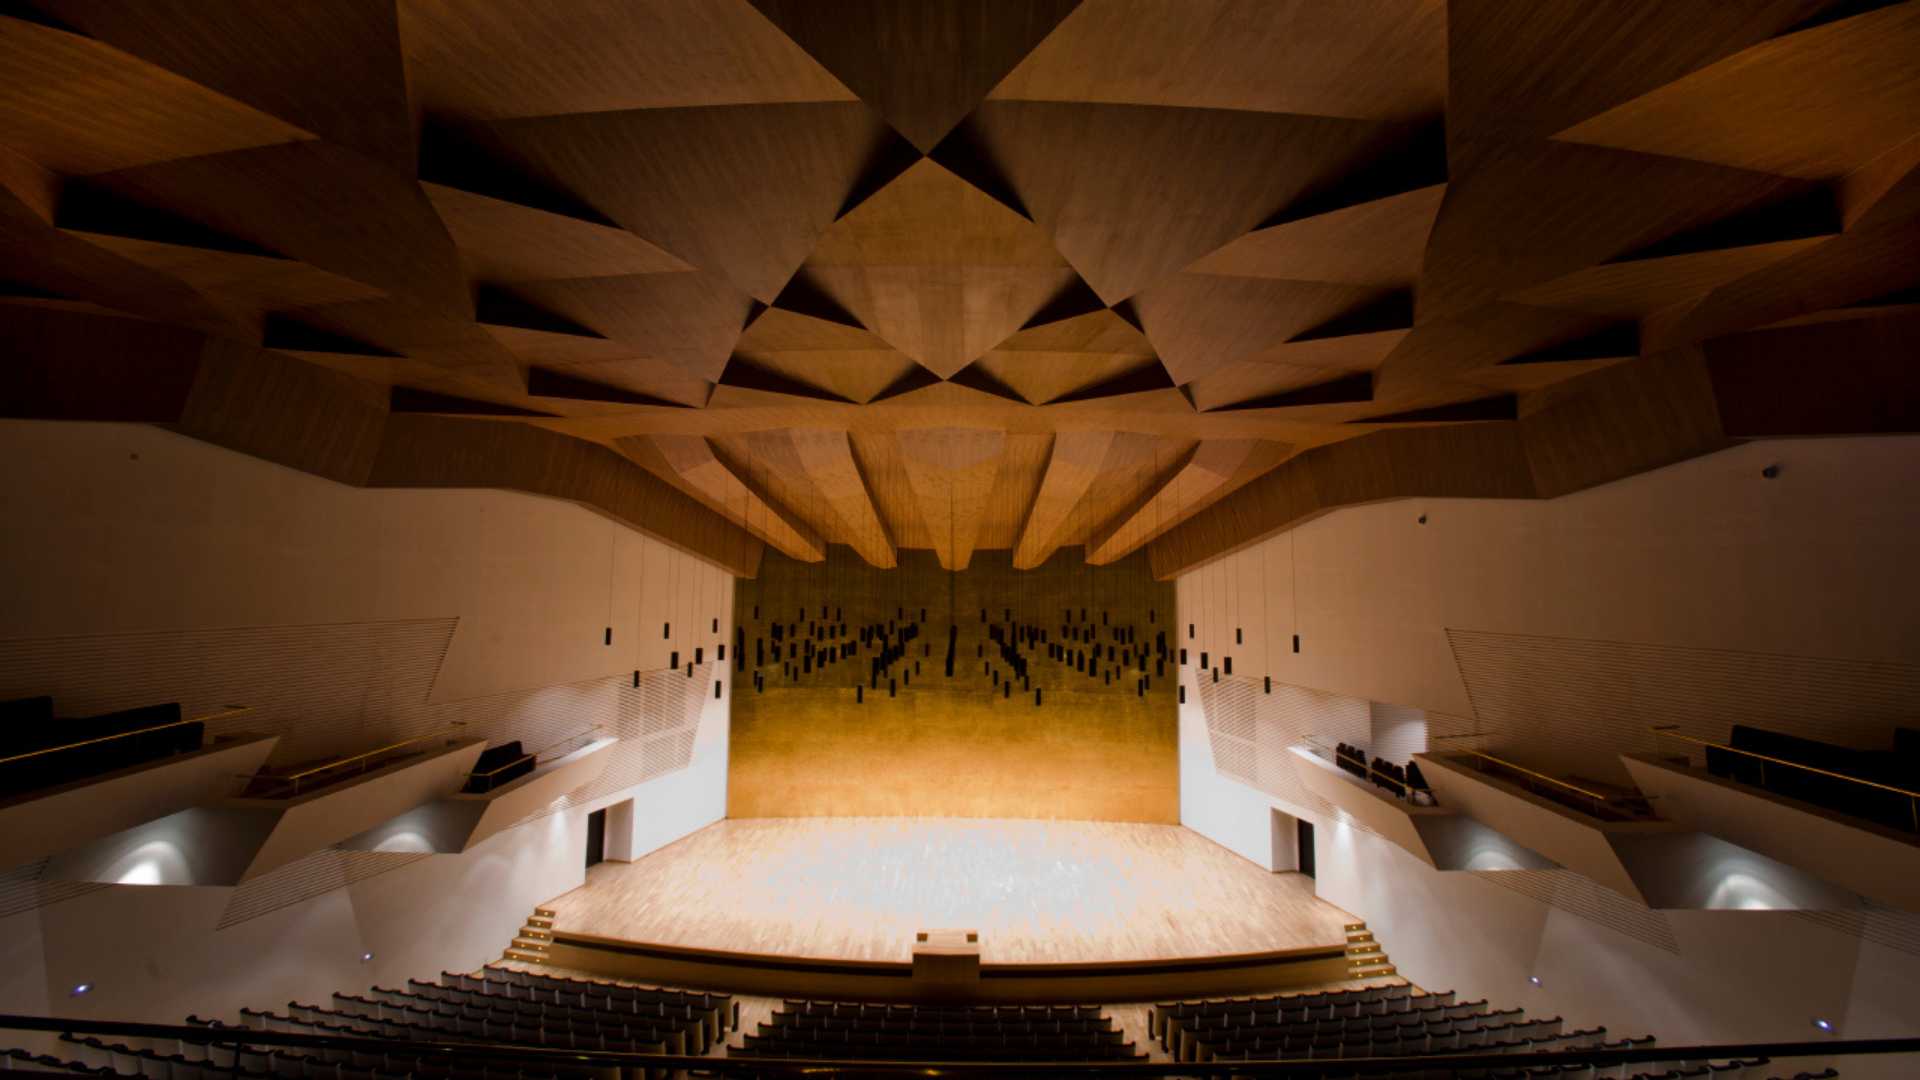 ADDA,  Auditorium des Provinzialrats von Alicante